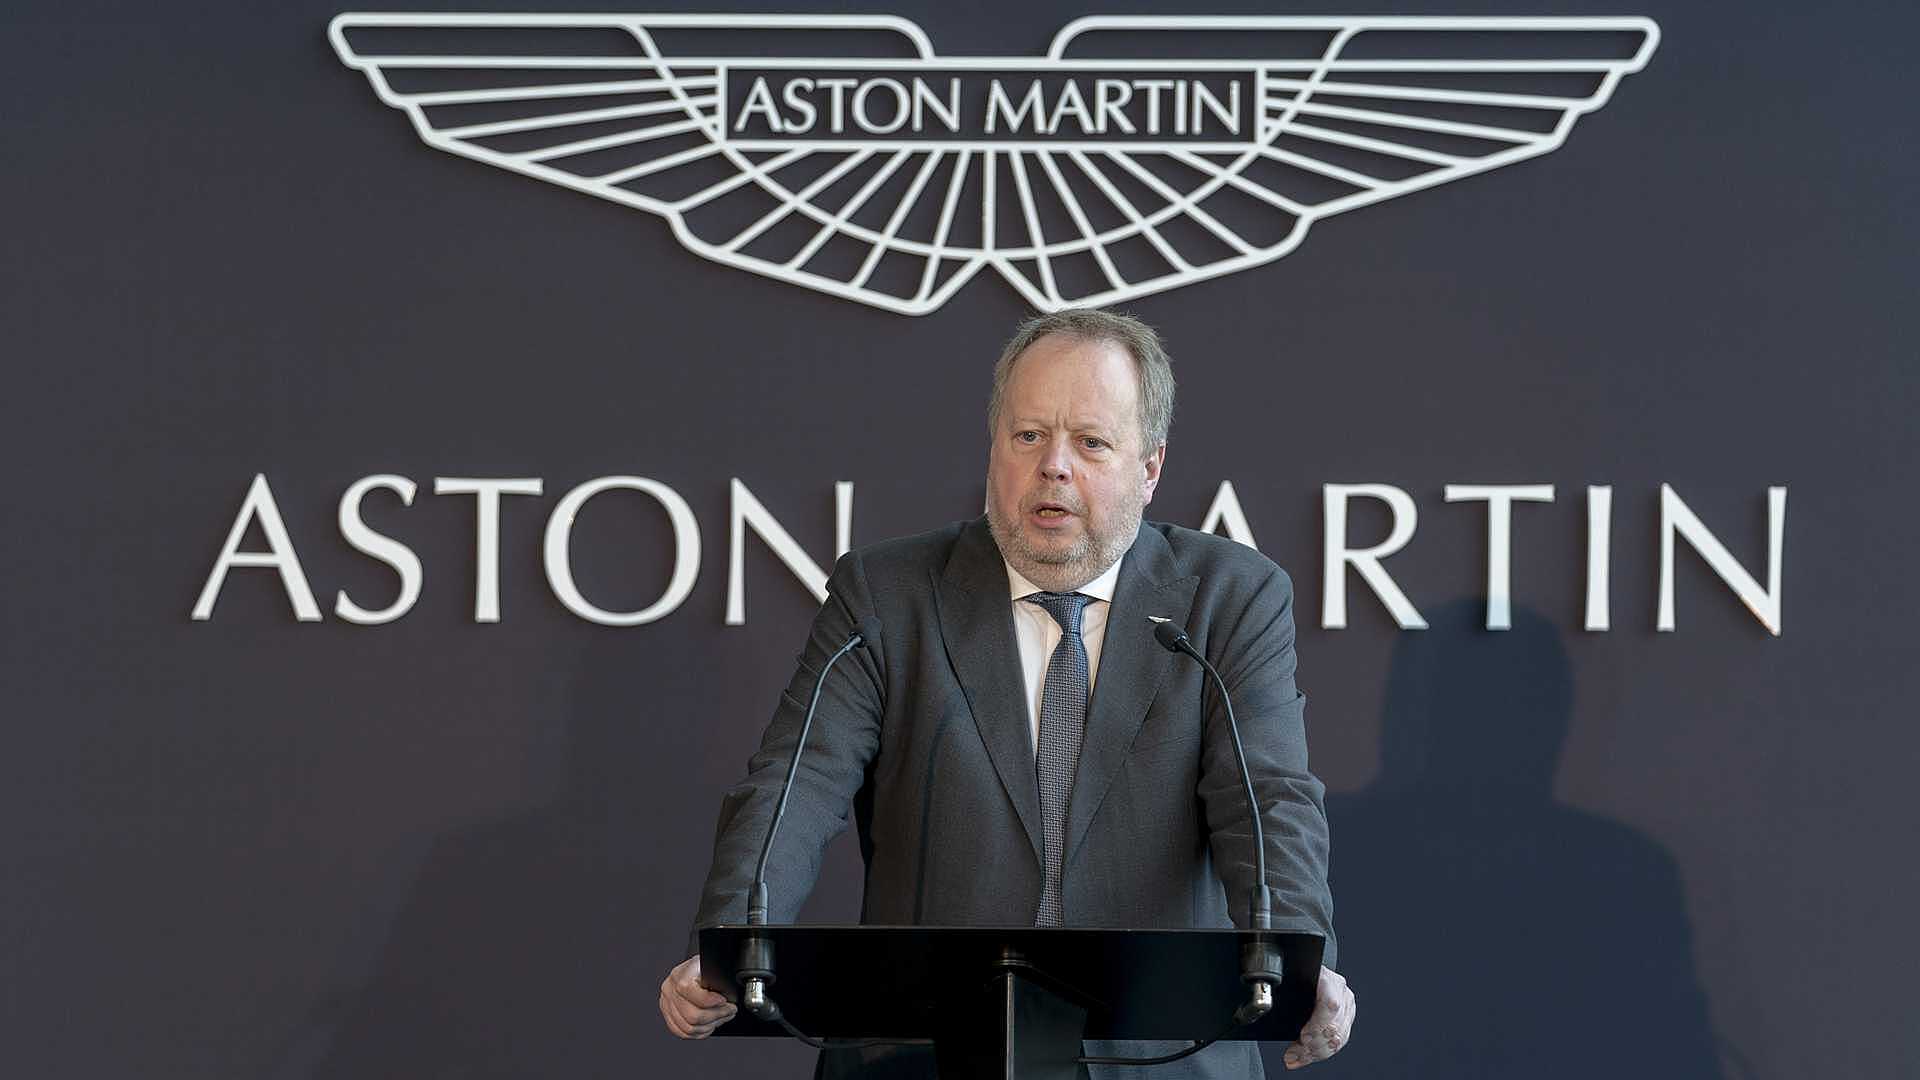 Aston Martin уволит несколько сотен сотрудников